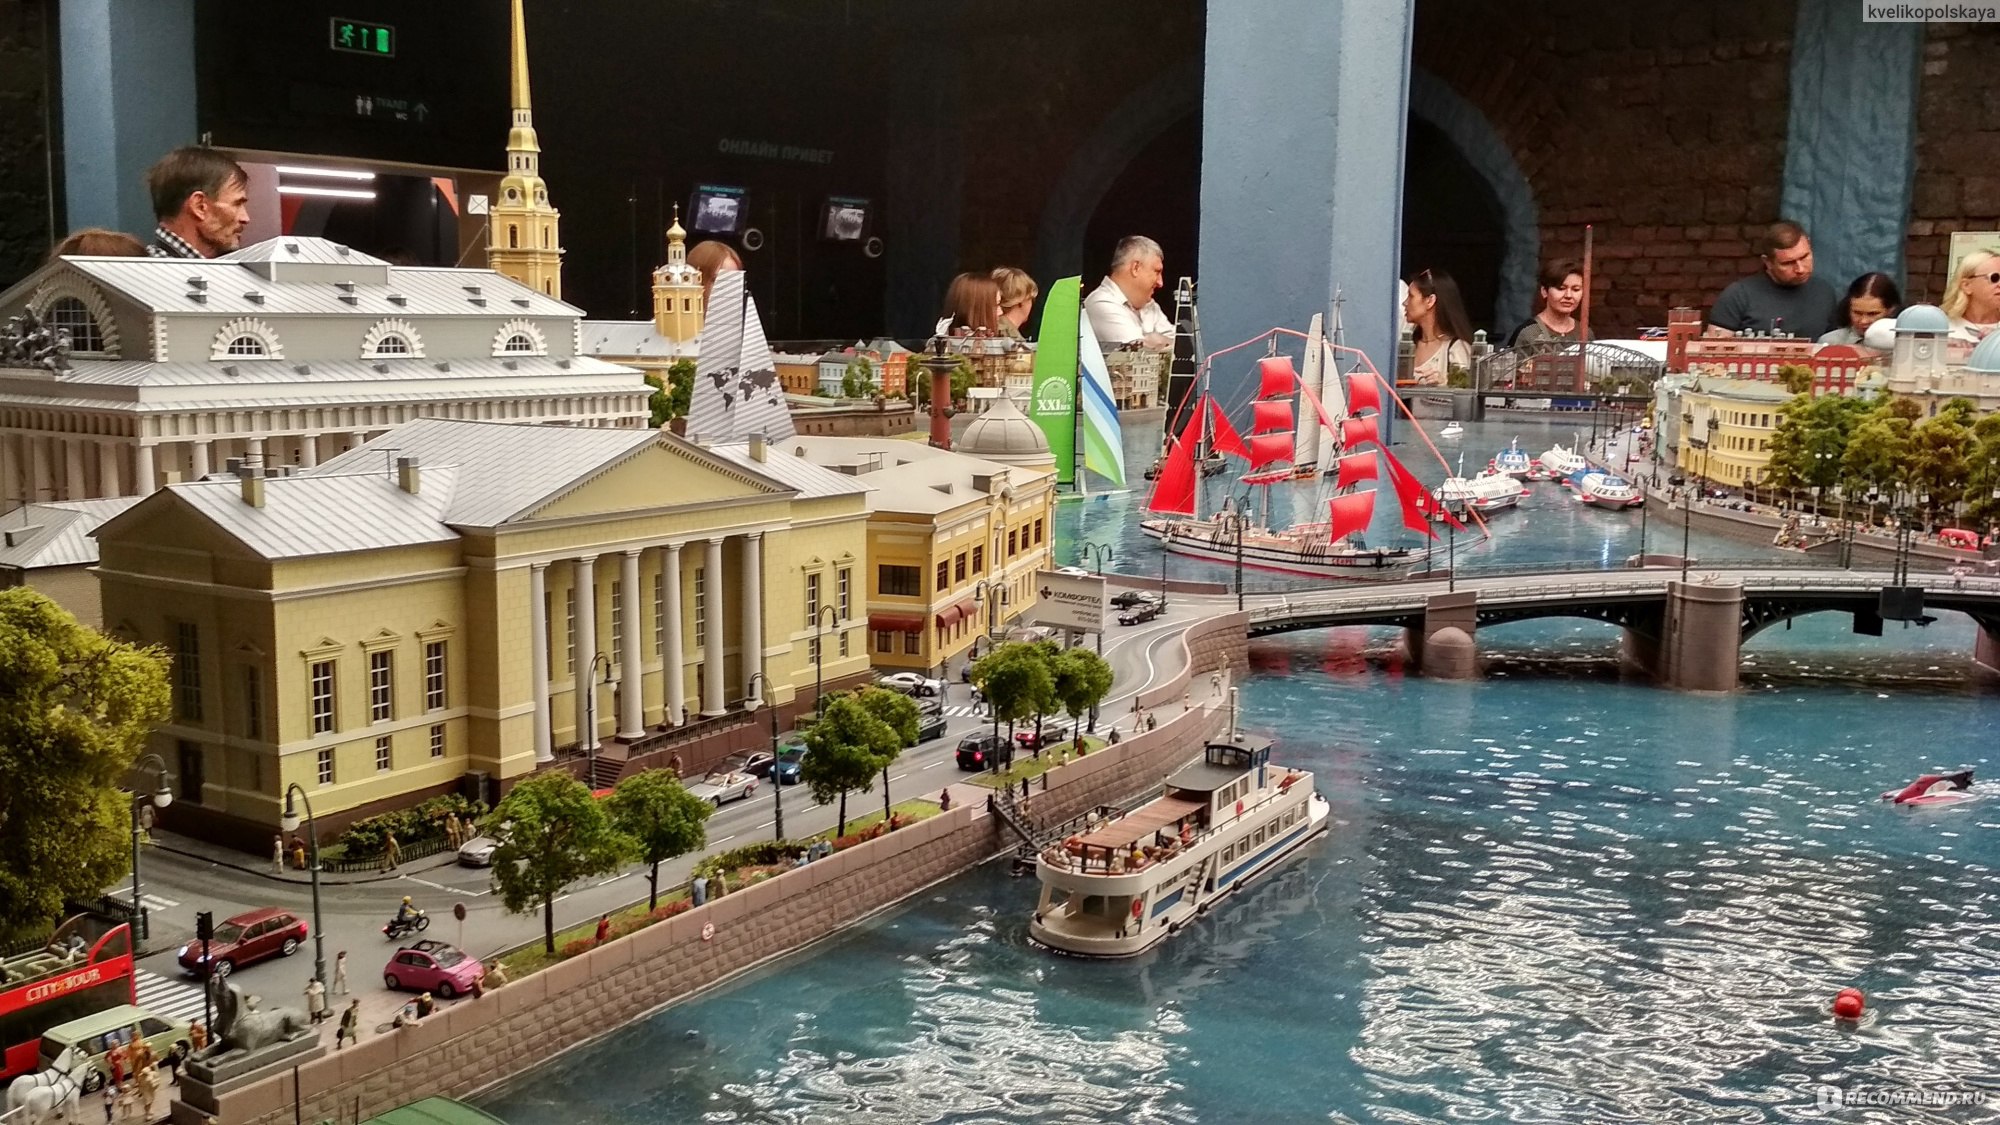 санкт петербург музей макет россии